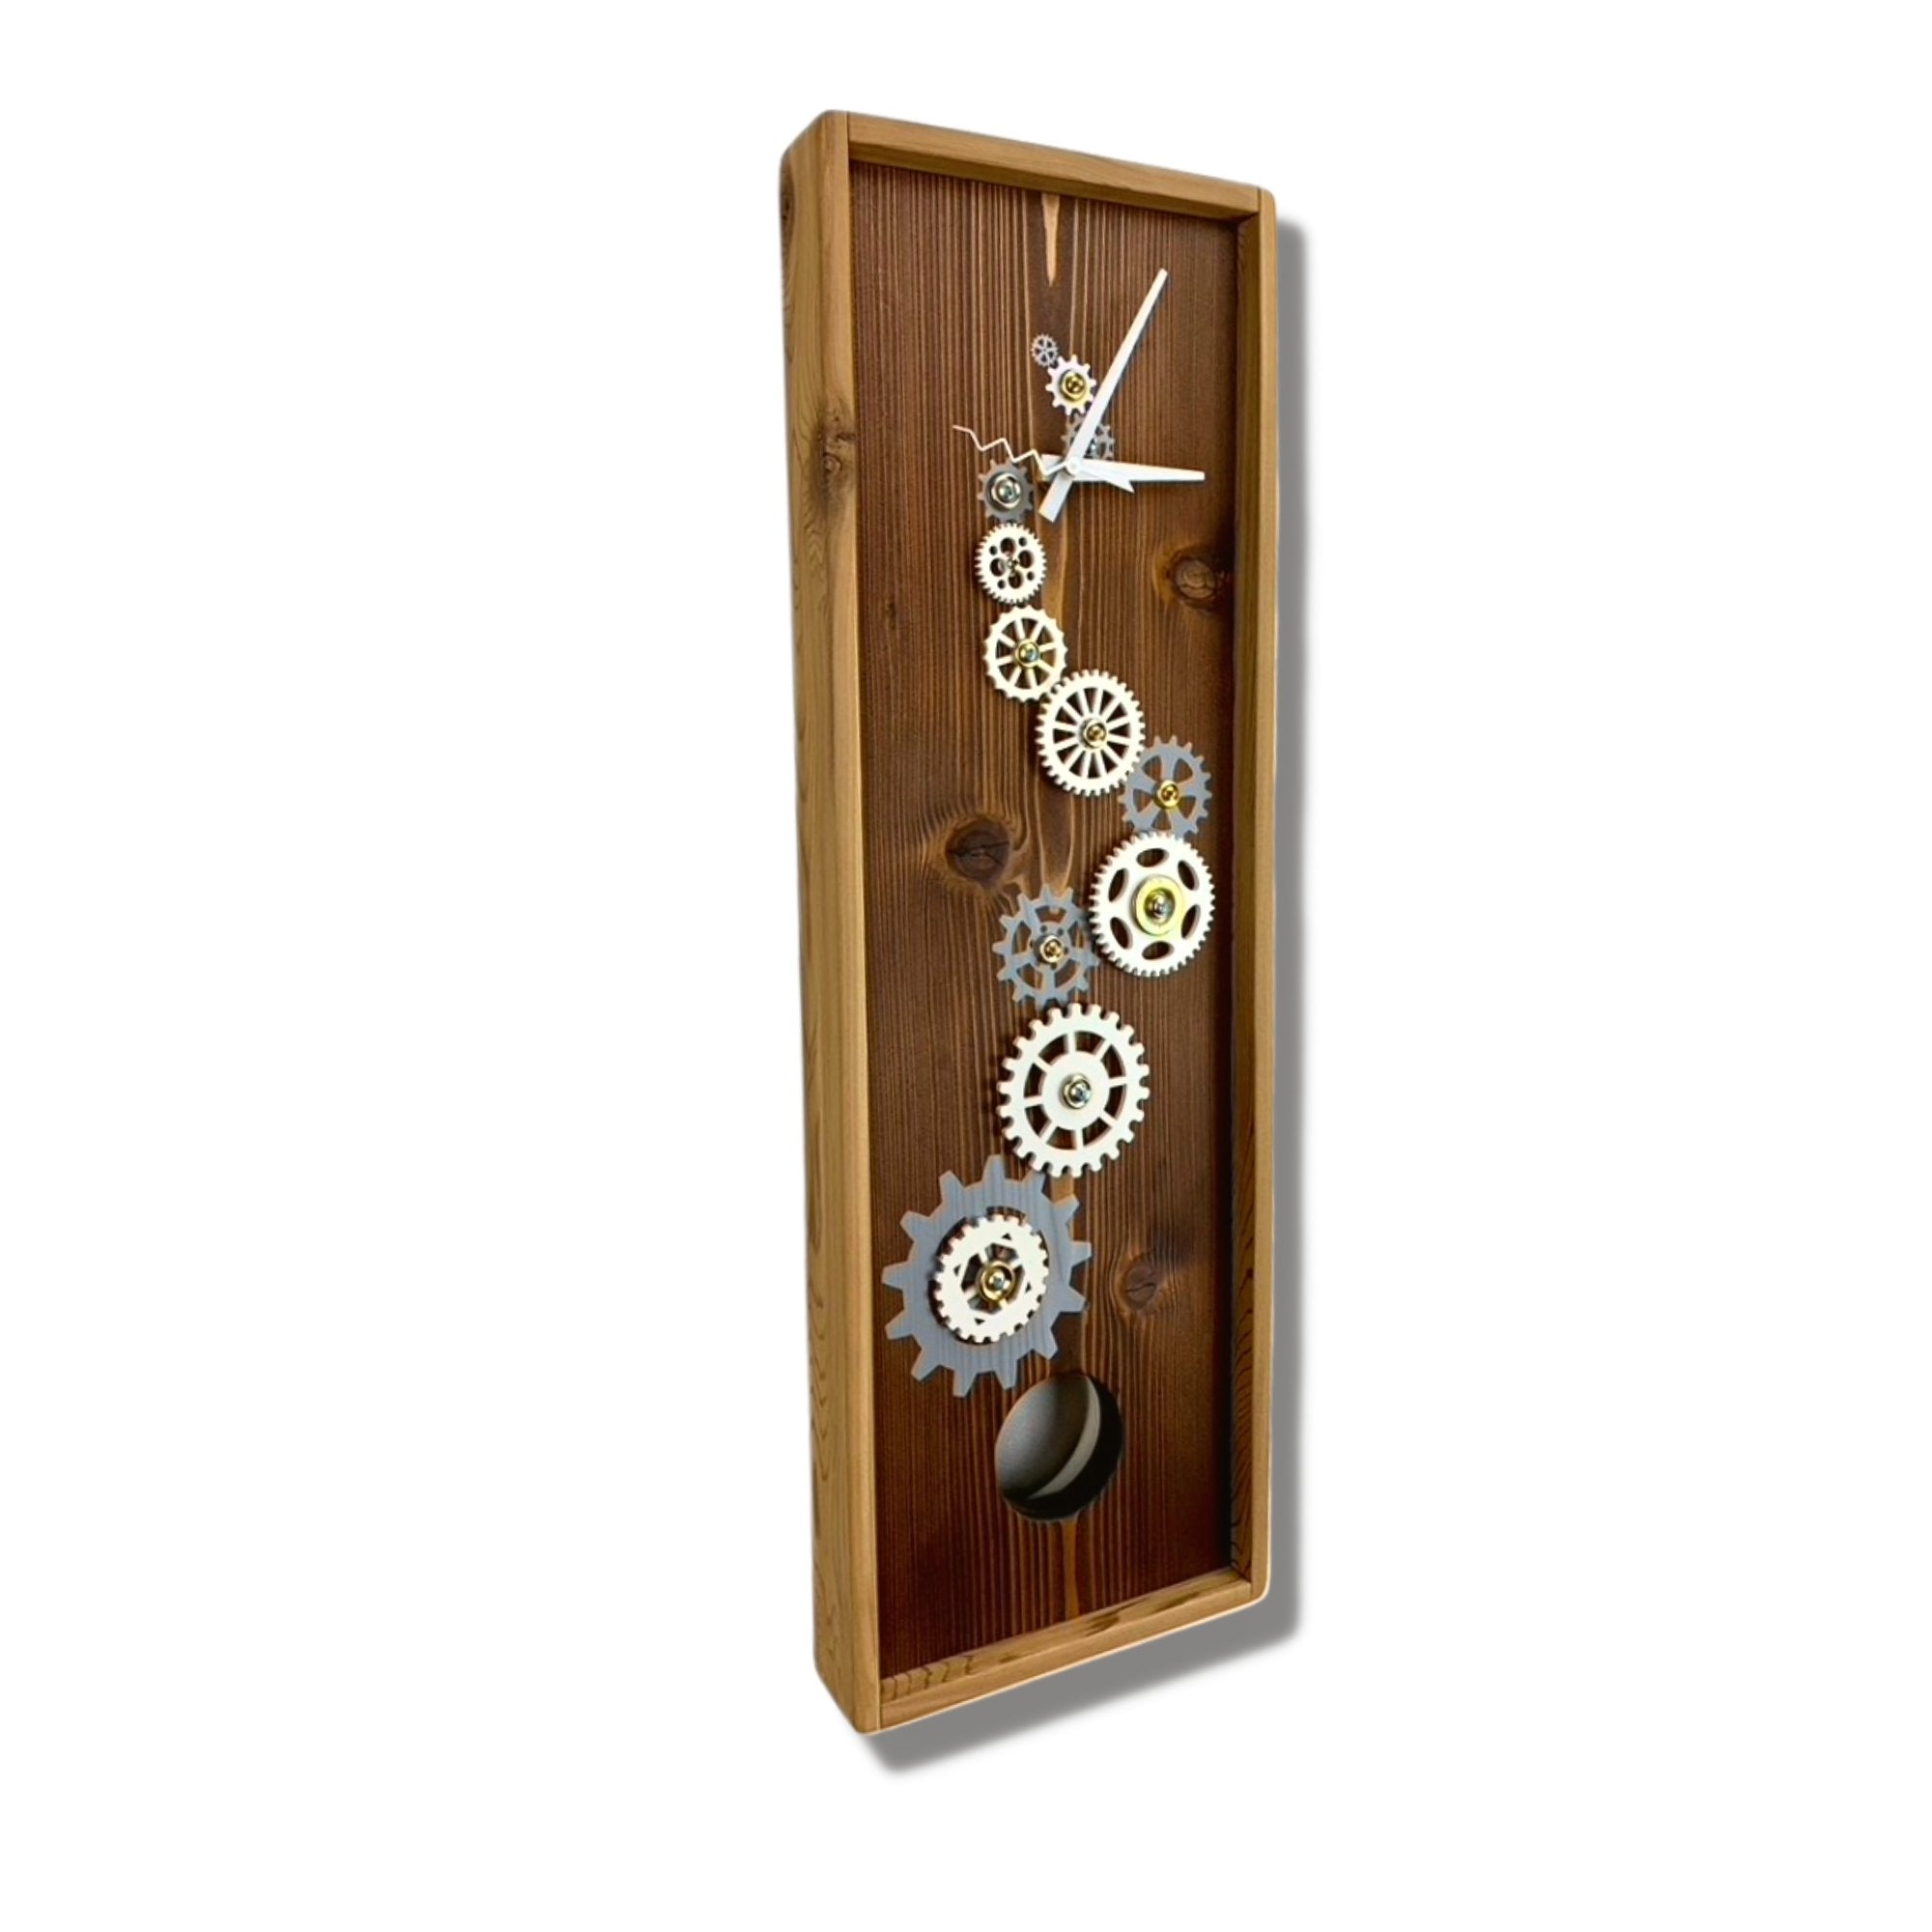 KingWood Pendulum Wall Clock w/ Gears, Cedar & Silver left